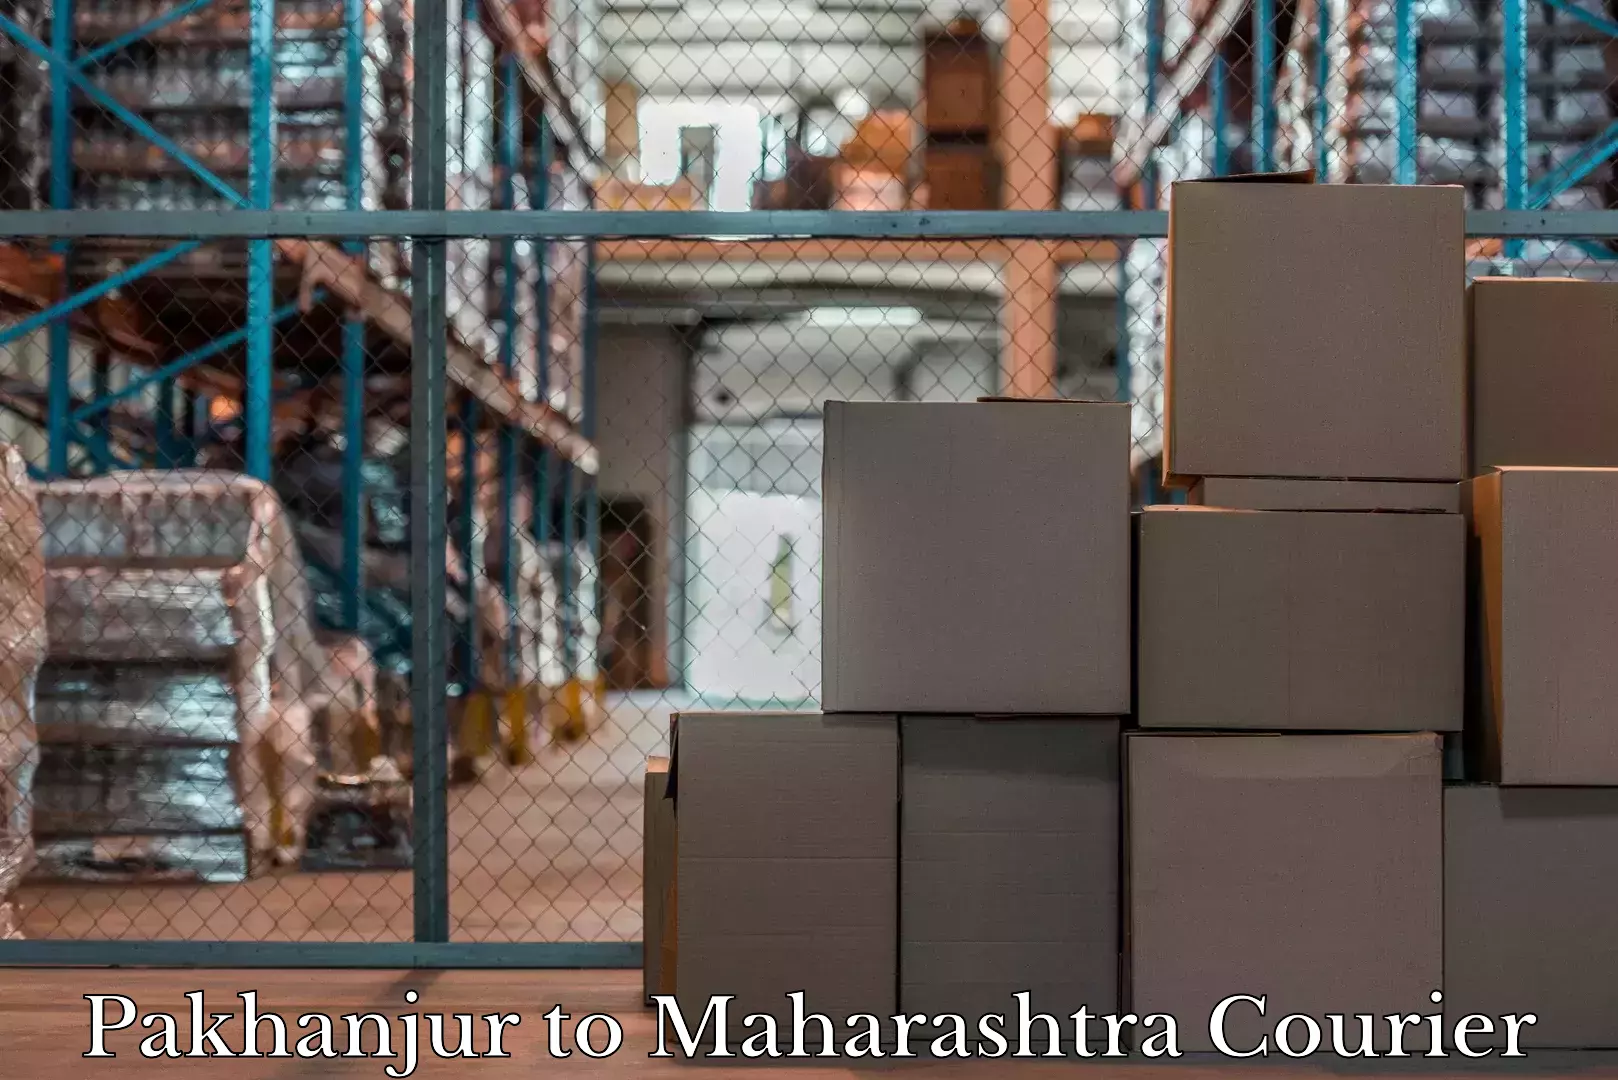 Baggage shipping calculator Pakhanjur to Maharashtra